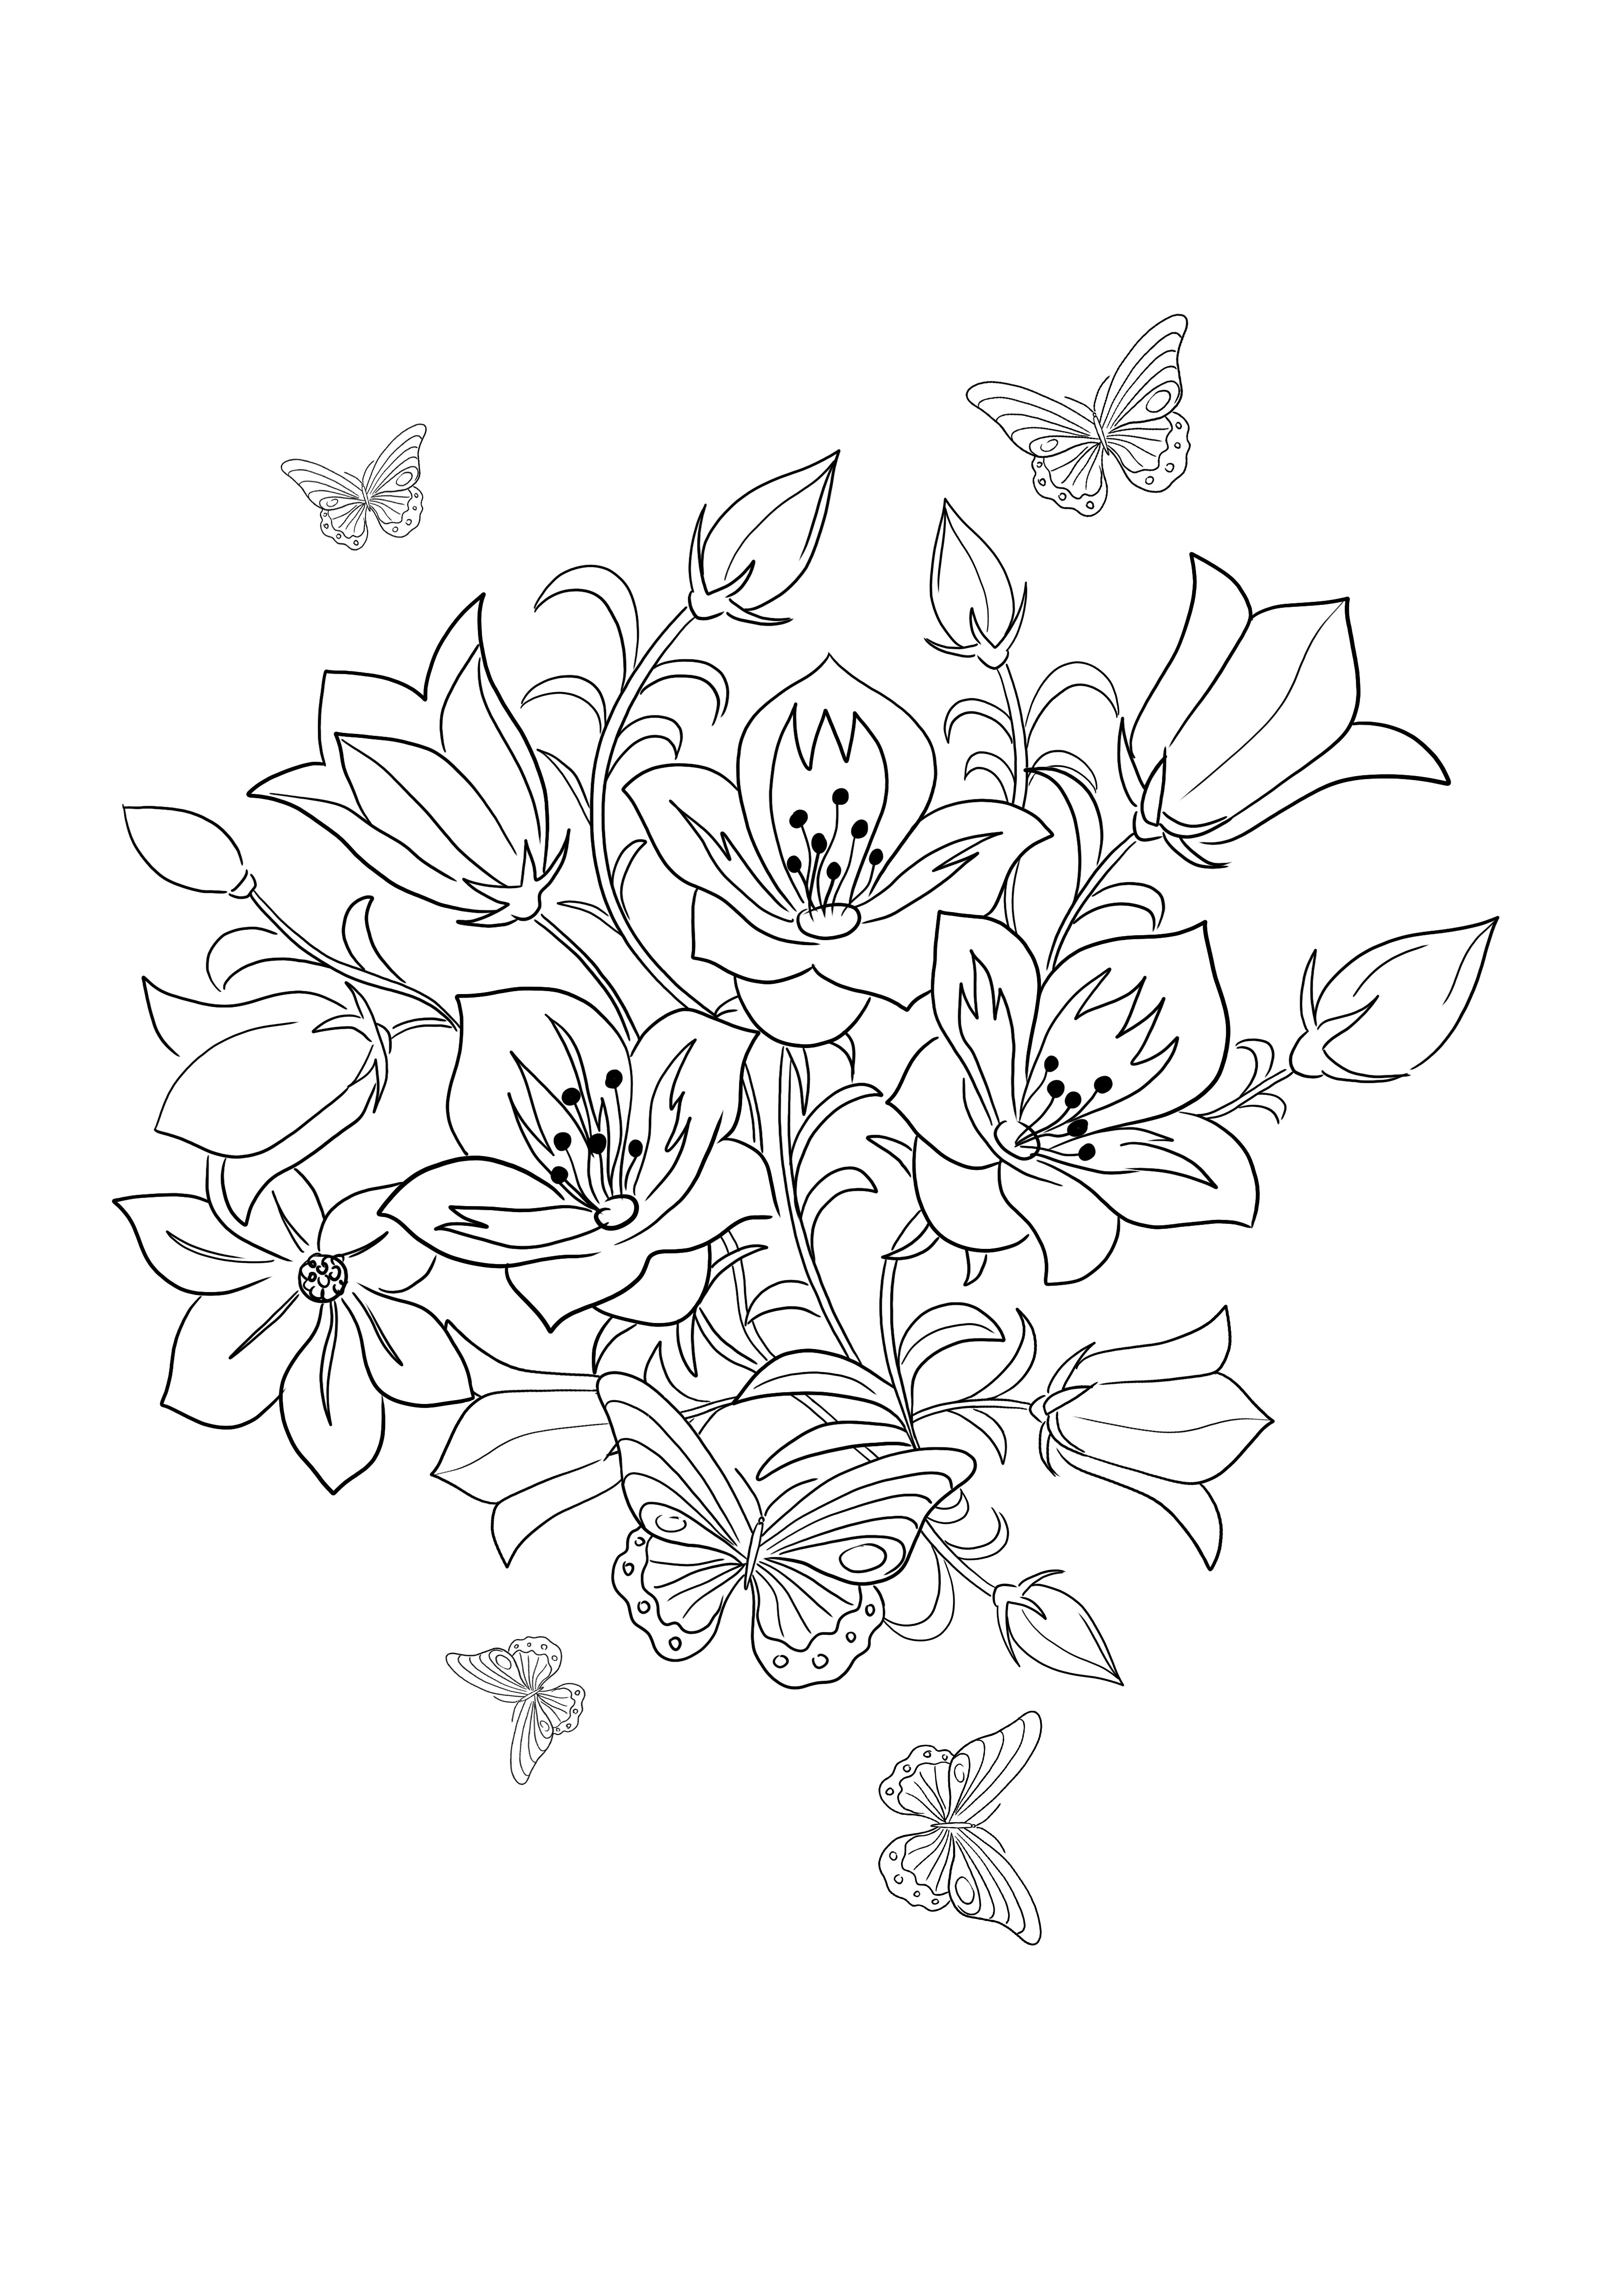 Skylark and Flowers könnyű és egyszerű színező oldal használatra kész